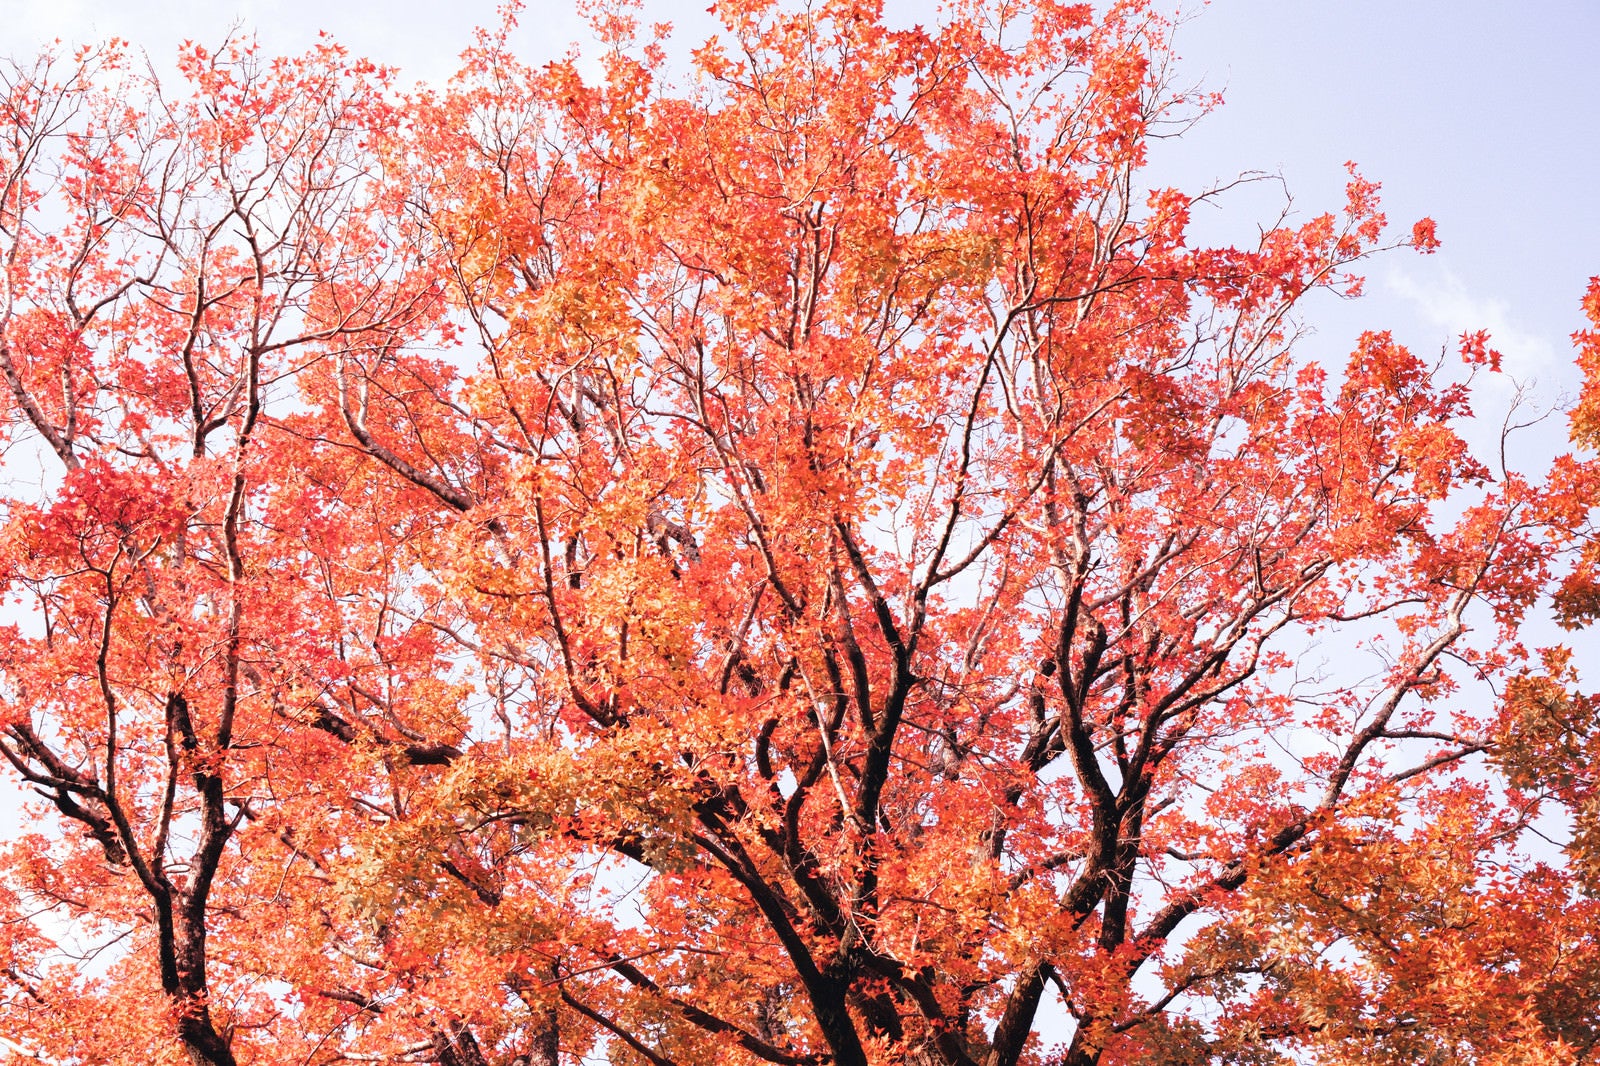 「紅葉した木々」の写真